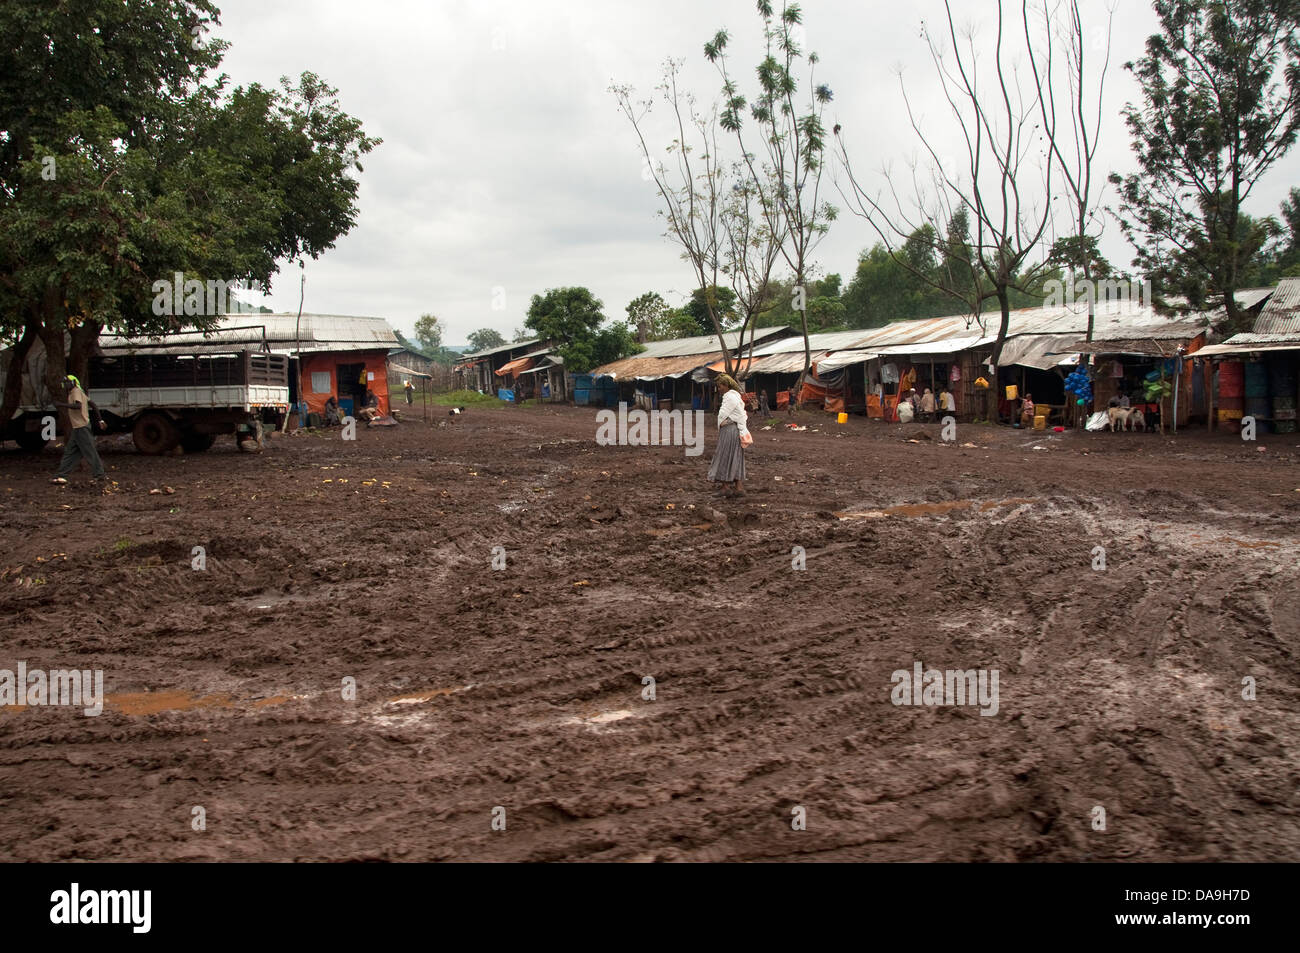 Villaggio africano con strade fangose, Kuja, Etiopia Foto Stock